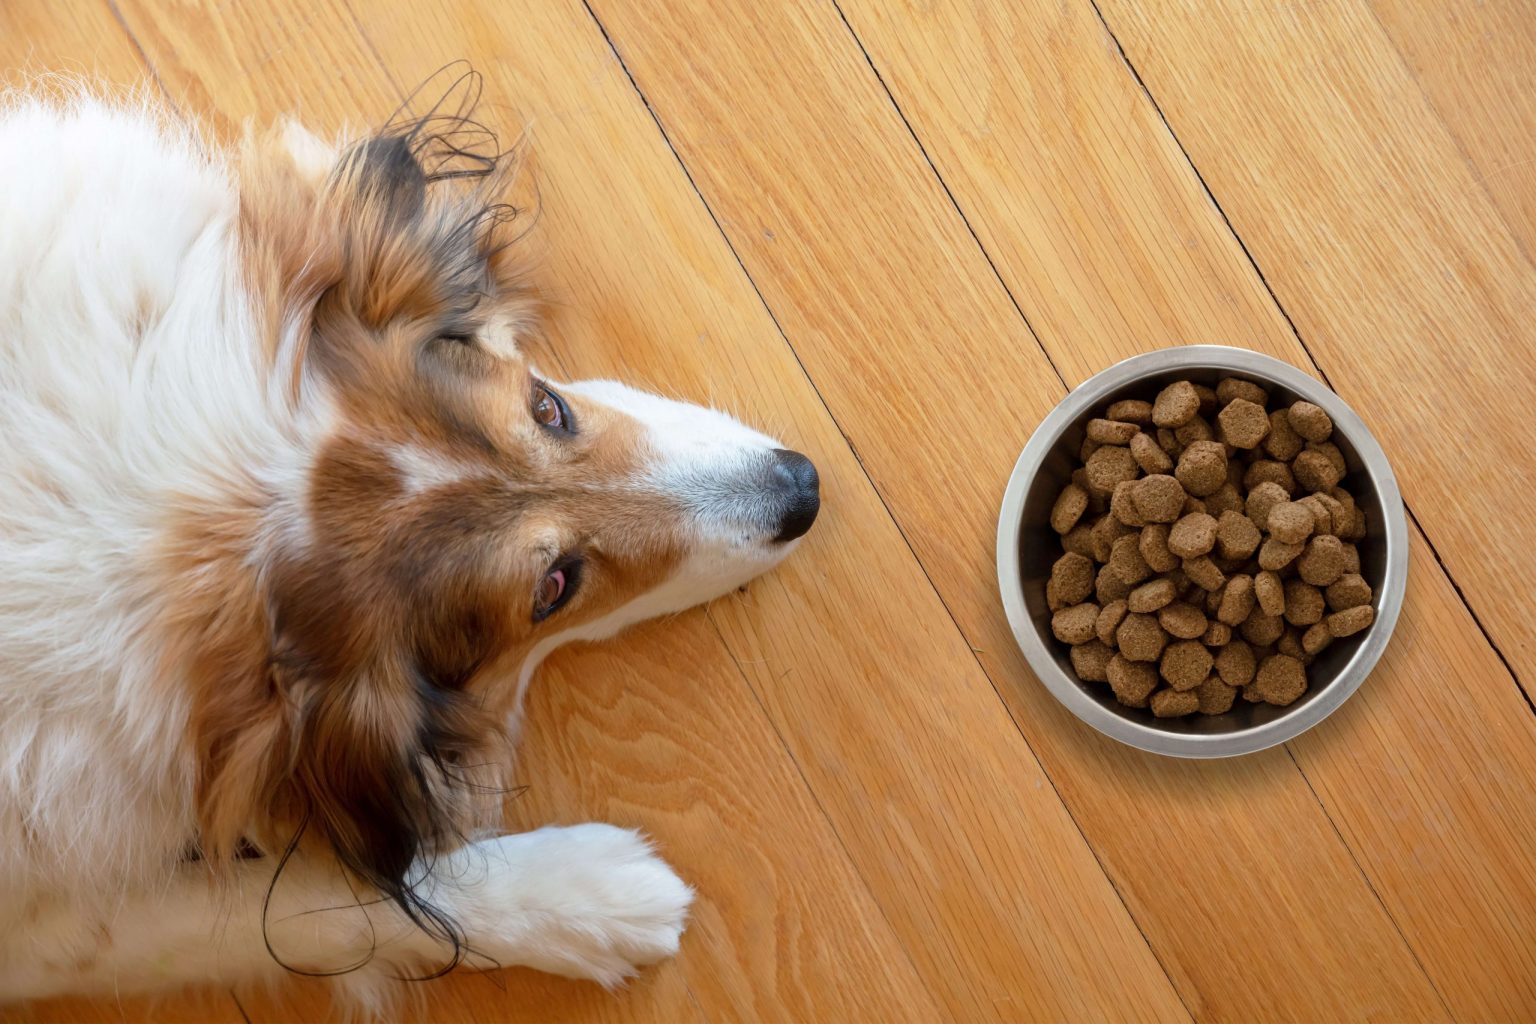 Le chien Shepherd allongé sur le planché devant son bol de nourriture, incertain de vouloir manger